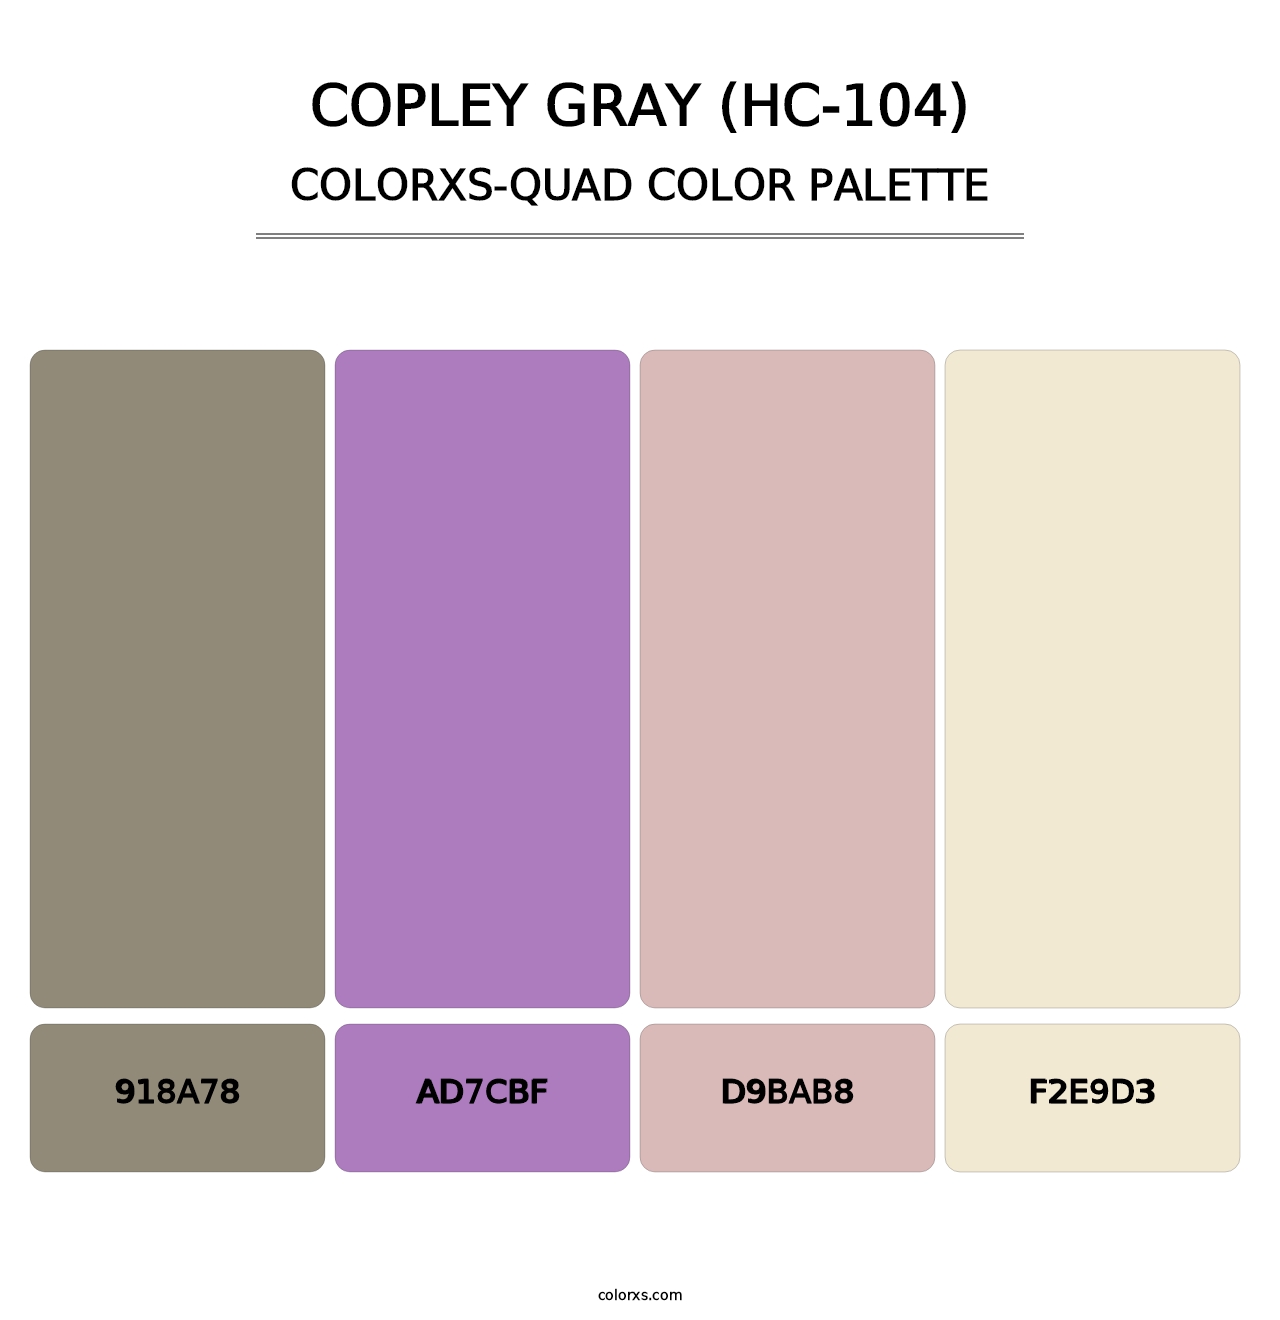 Copley Gray (HC-104) - Colorxs Quad Palette